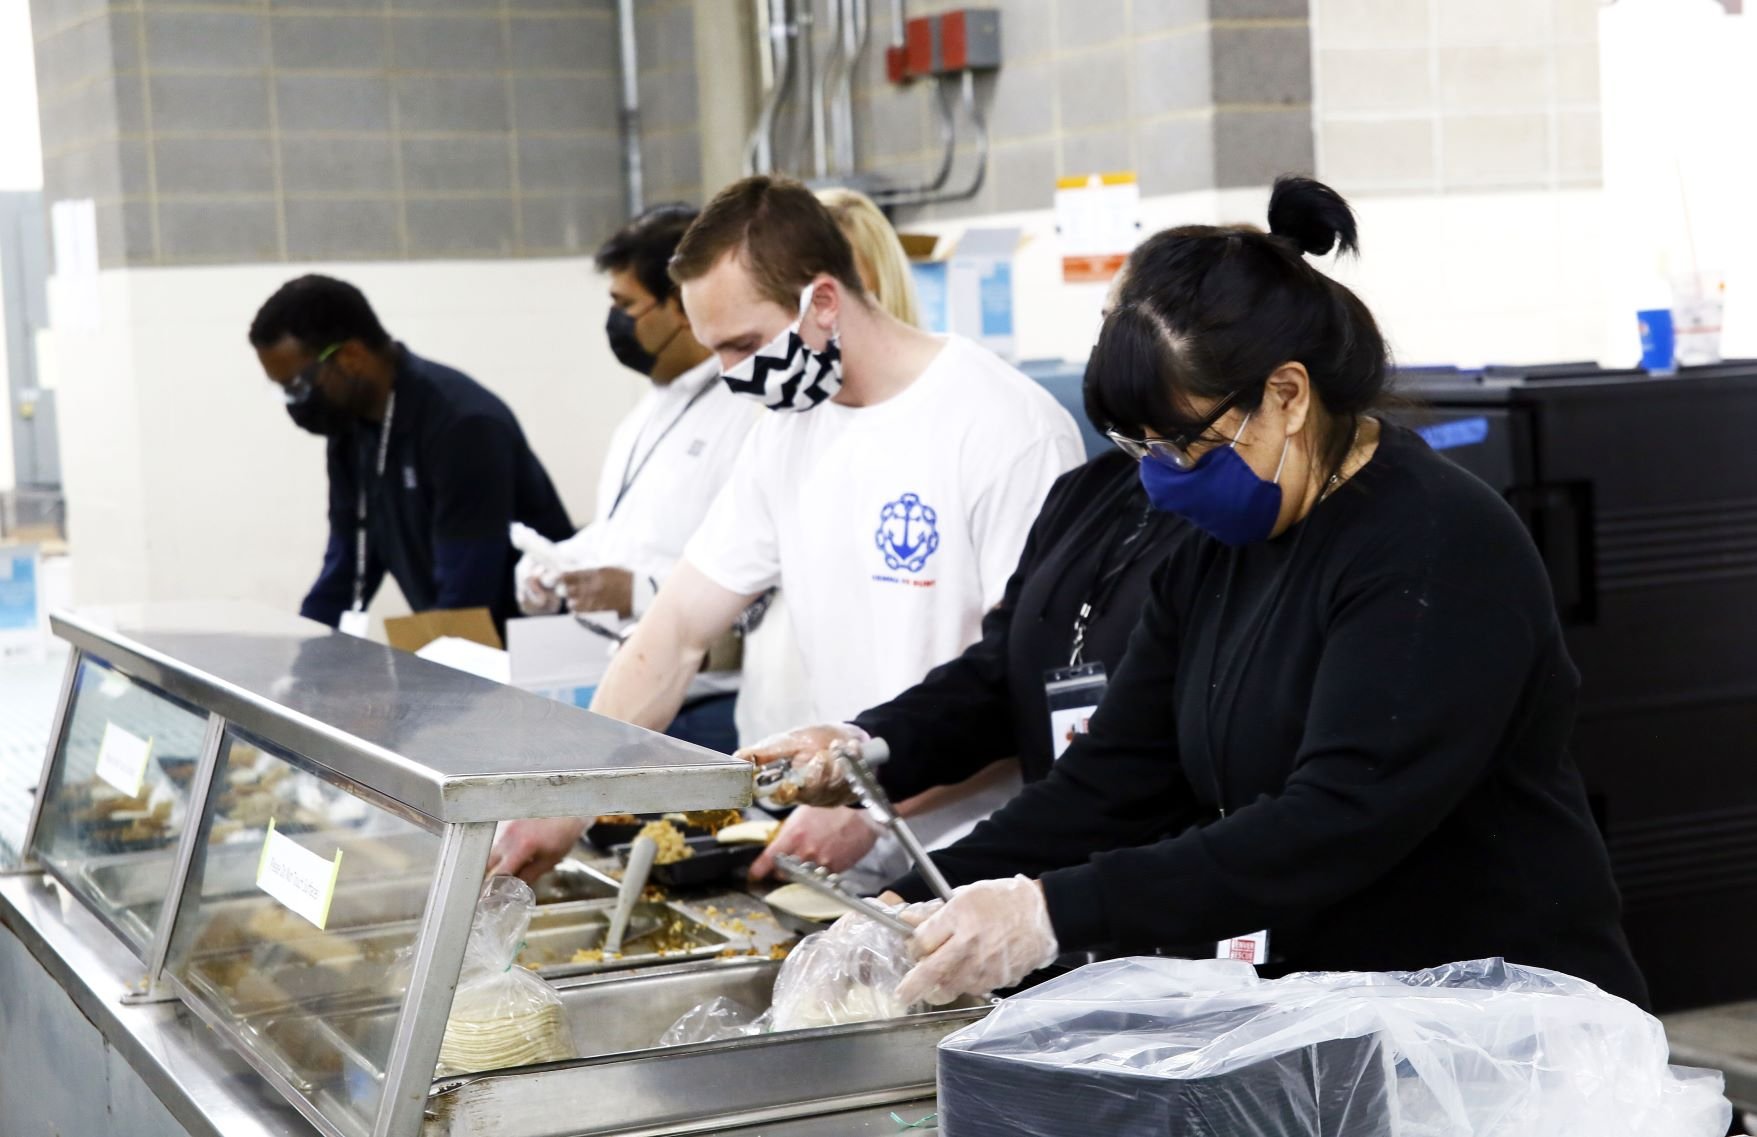 Volunteers serve food at Denver Rescue Mission